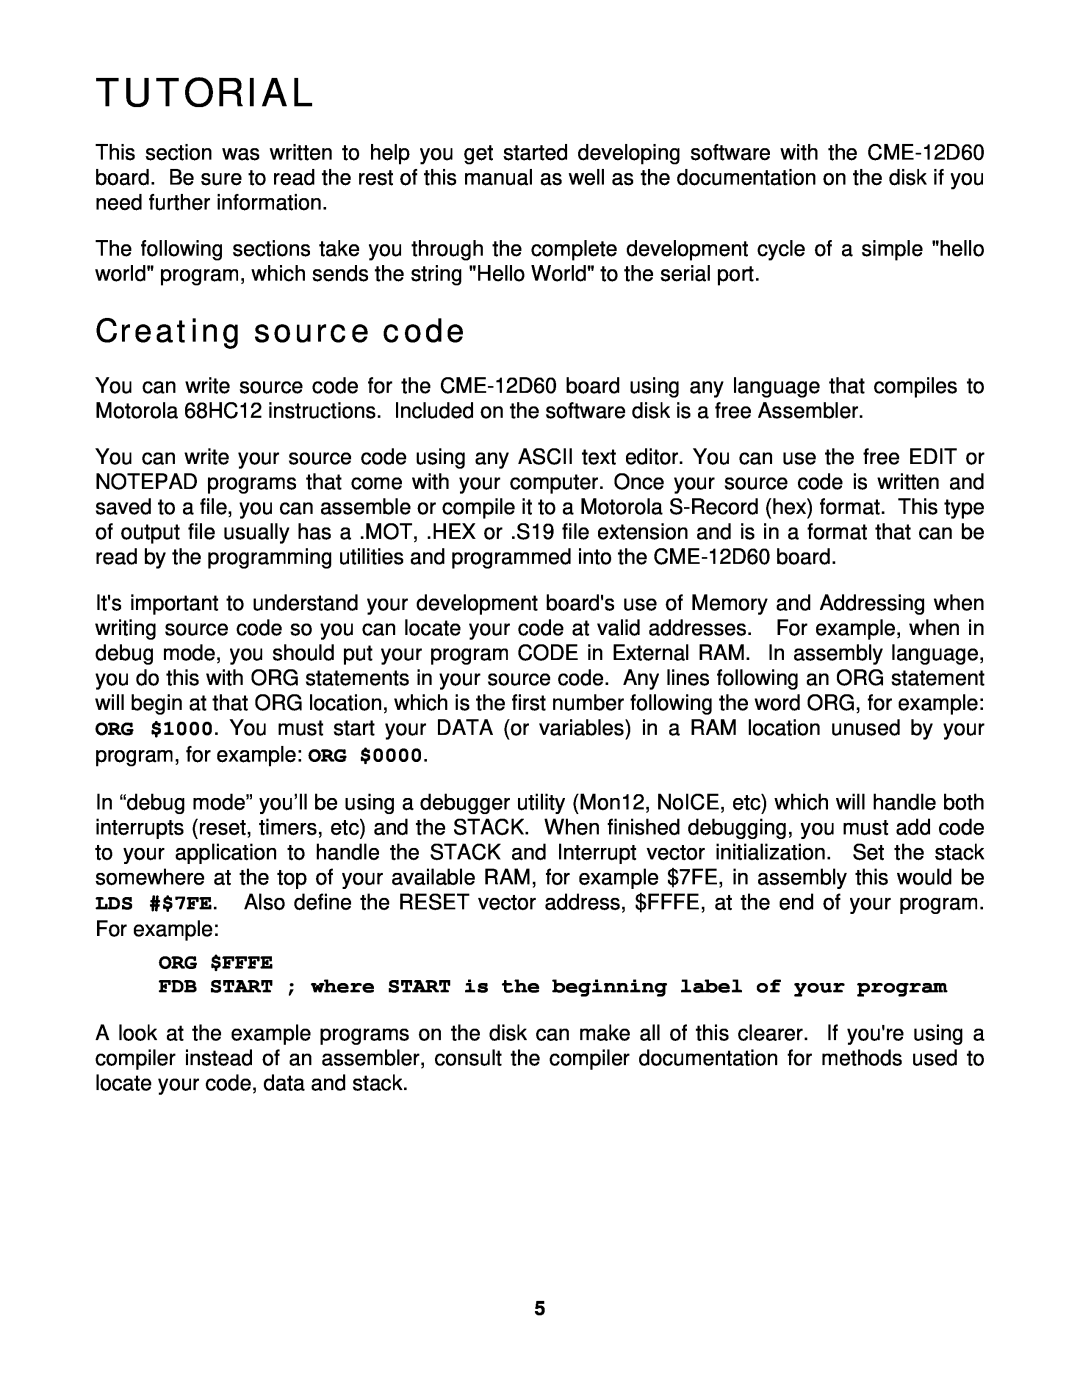 Motorola CME-12D60 manual Tutorial, Creating source code 